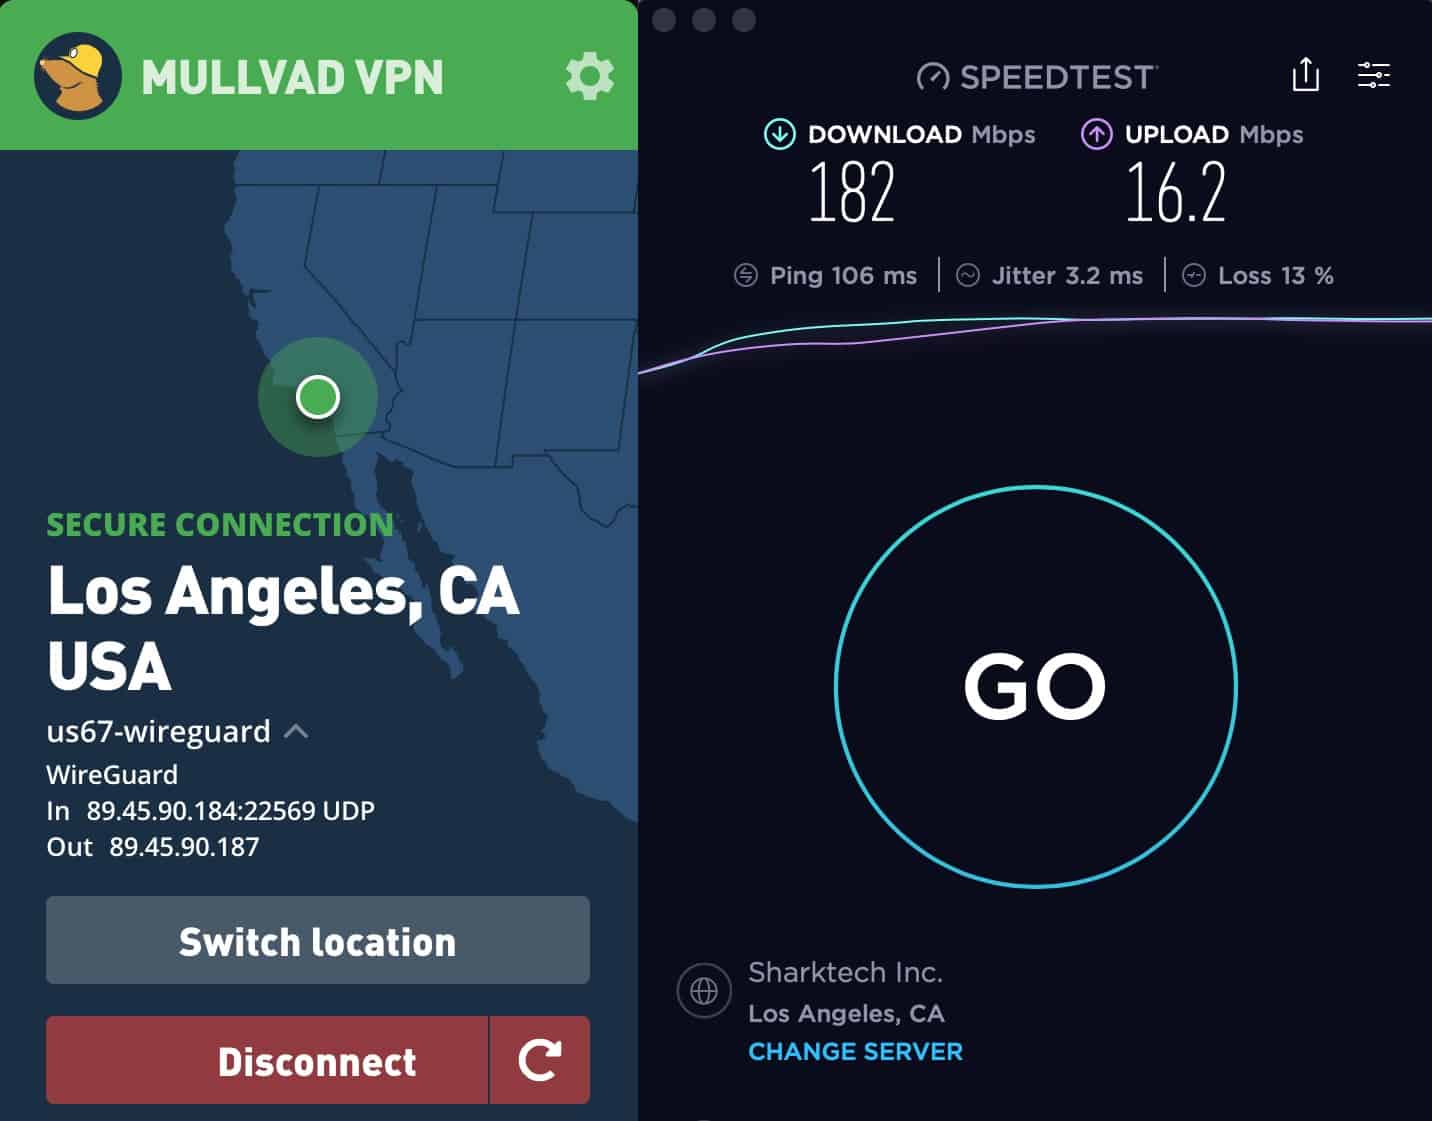 Mullvad VPN Speed Test